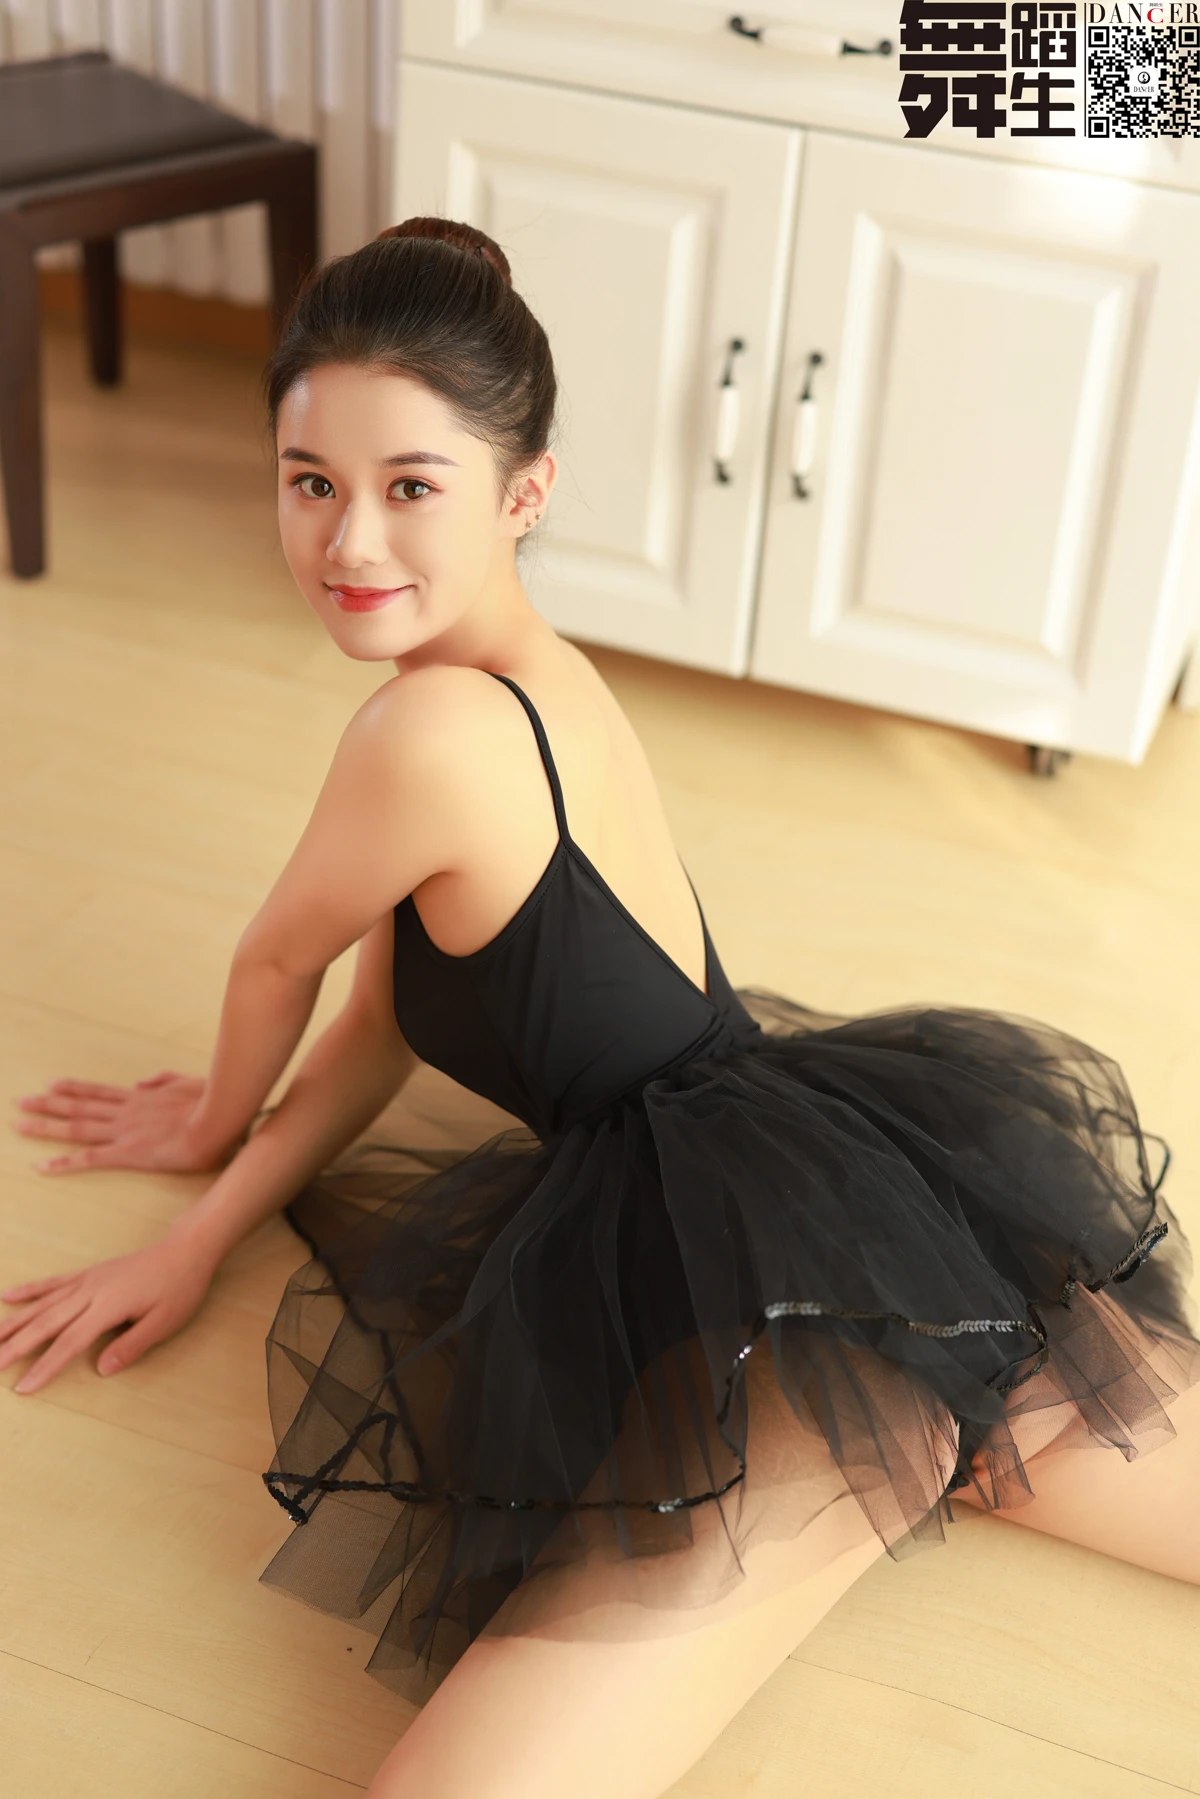 Dance舞蹈生 No 025 Meng Huan 0003 8781771500.jpg